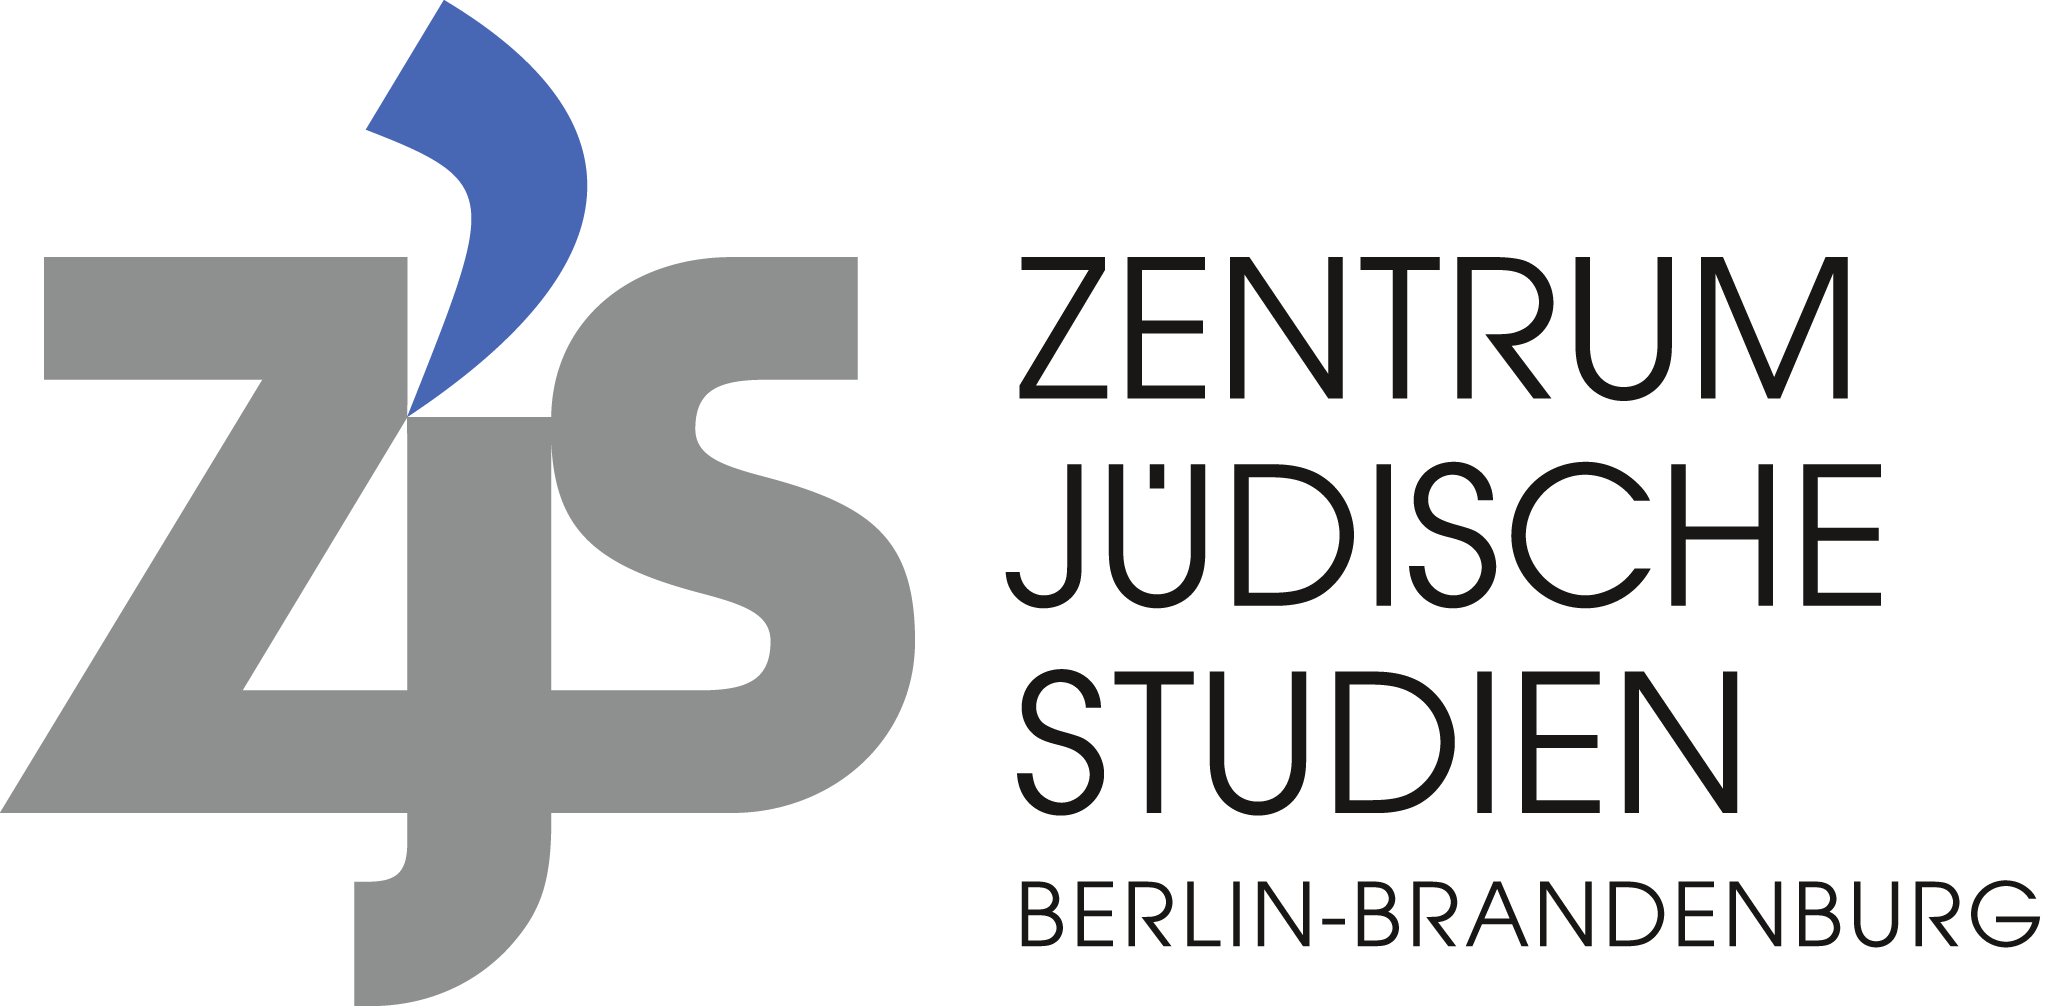 Zentrum Jüdische Studien Berlin-Brandenburg Newsletter Dezember 2013 Sehr geehrte Damen und Herren, die erste internationale Tagung des ZJS liegt hinter uns.